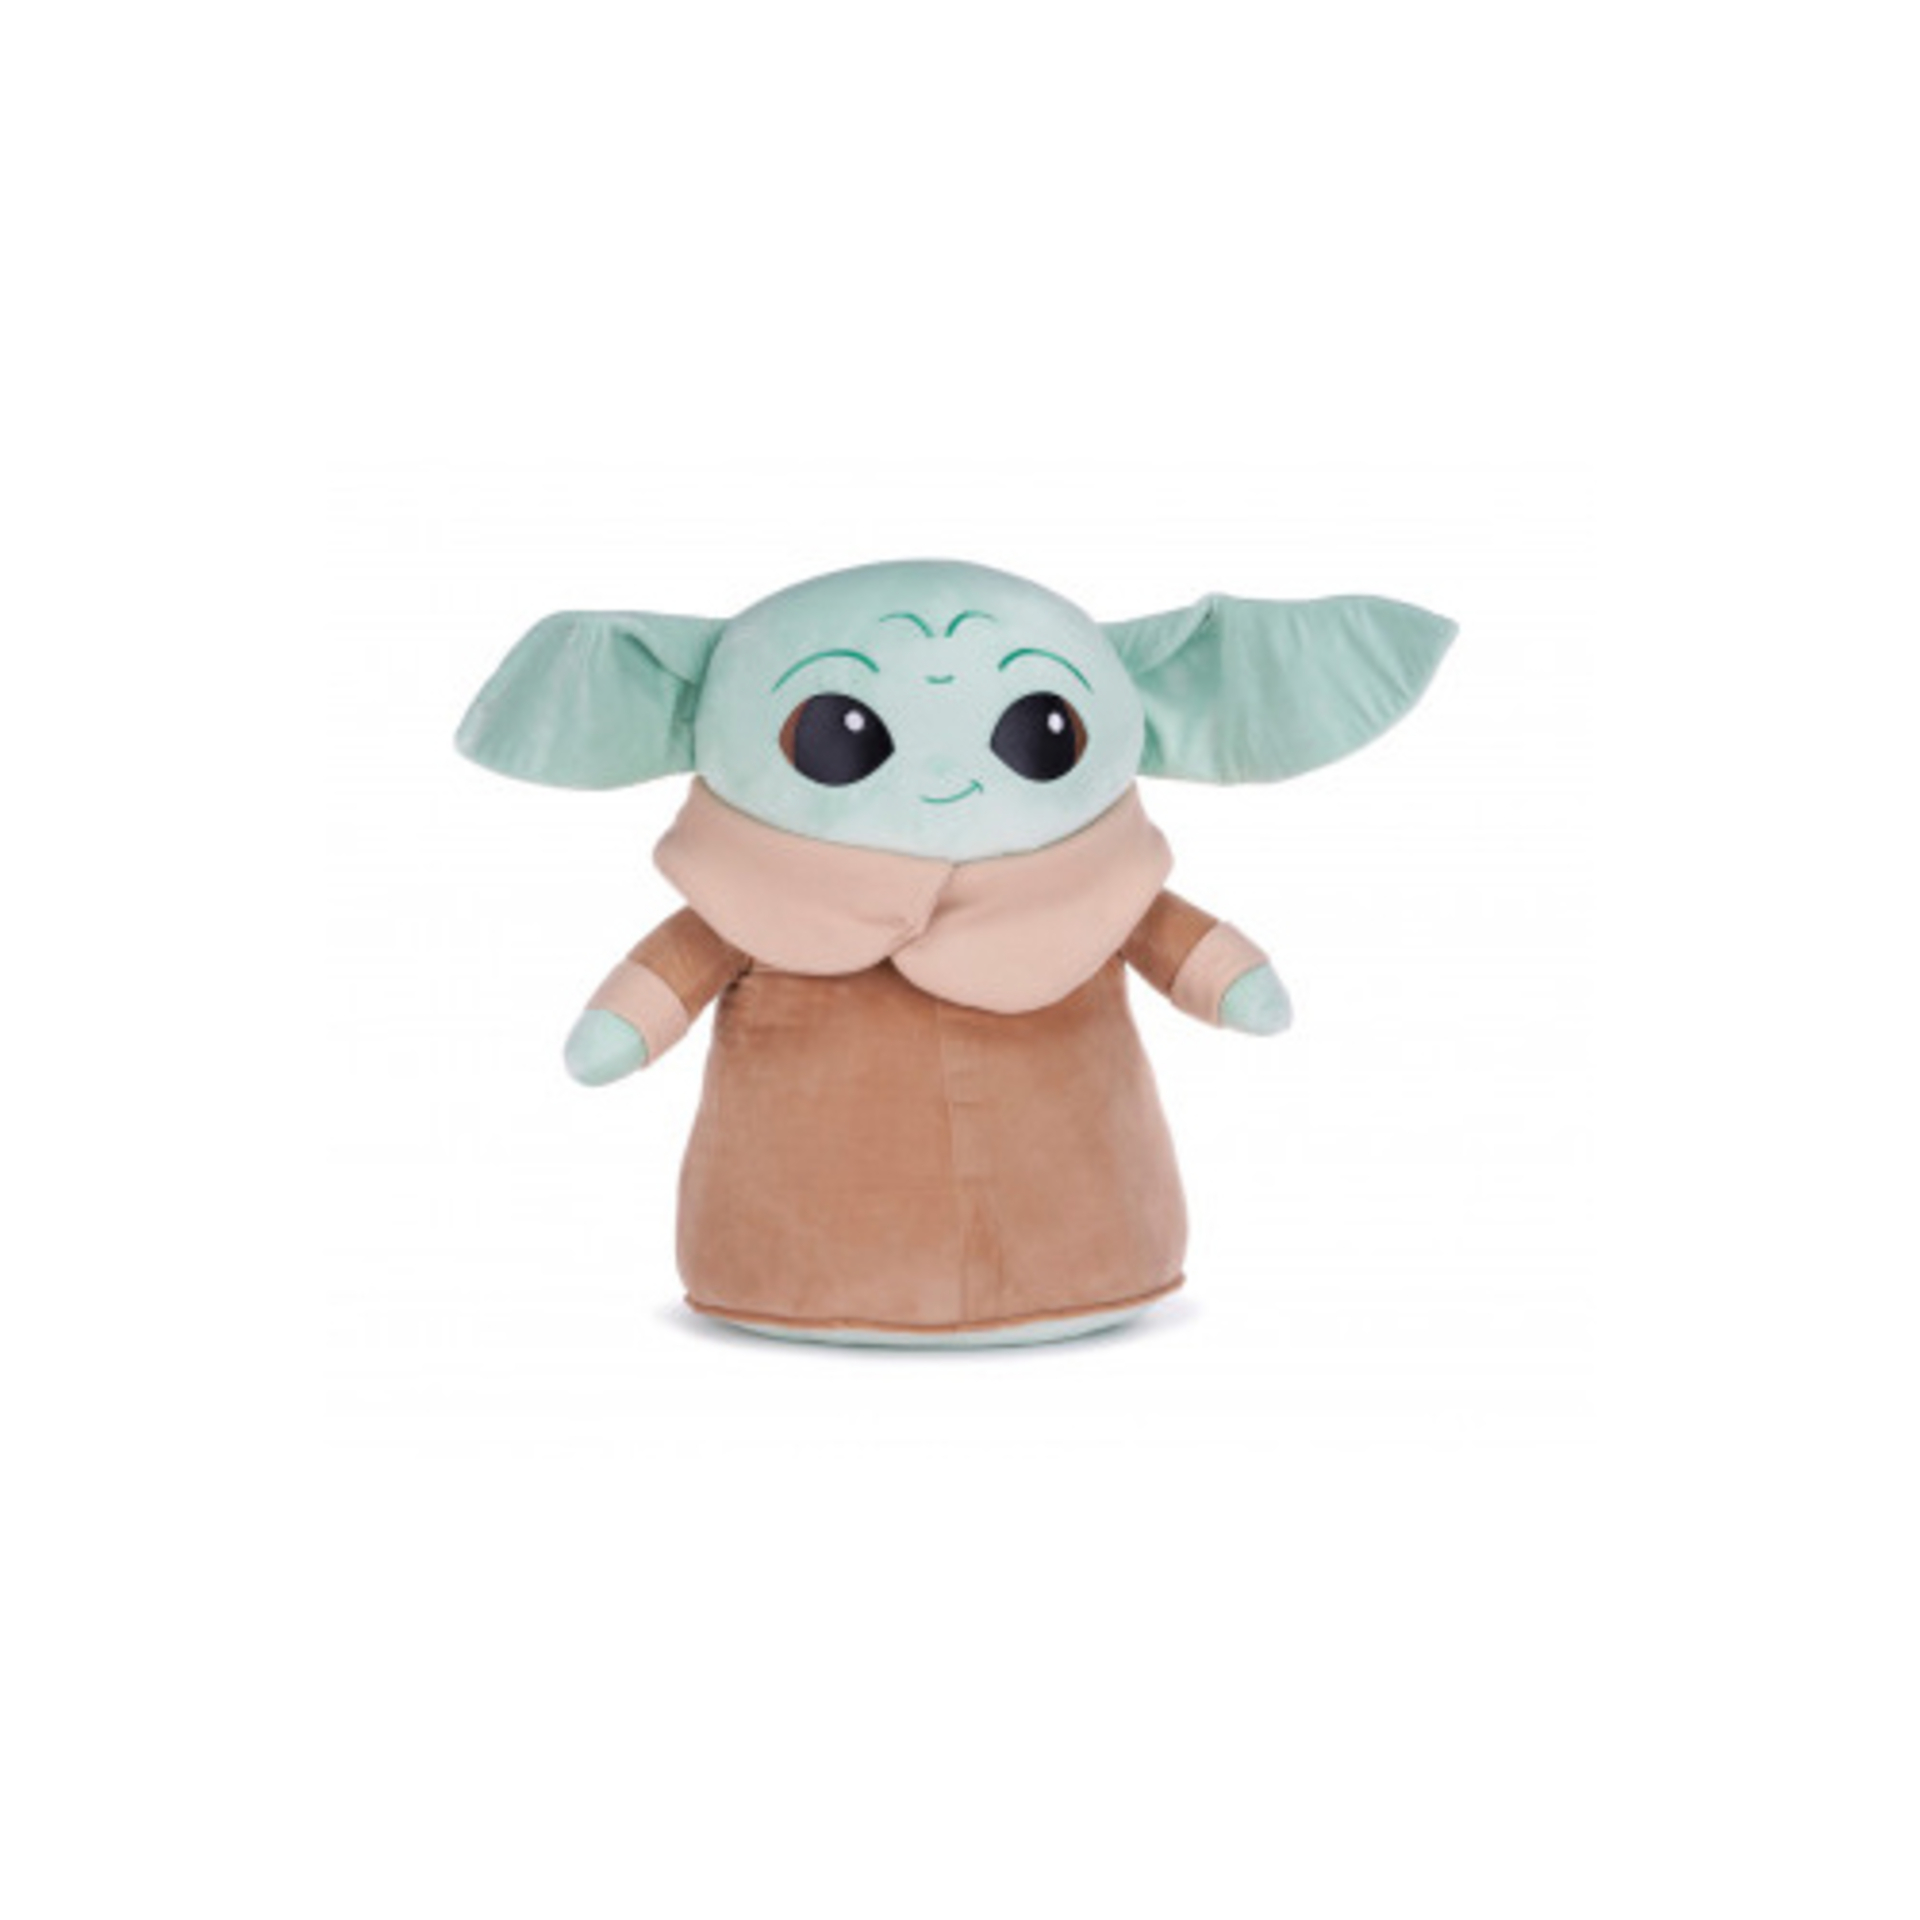 Disney Mandalorian Baby Yoda Grogu Plüschtier